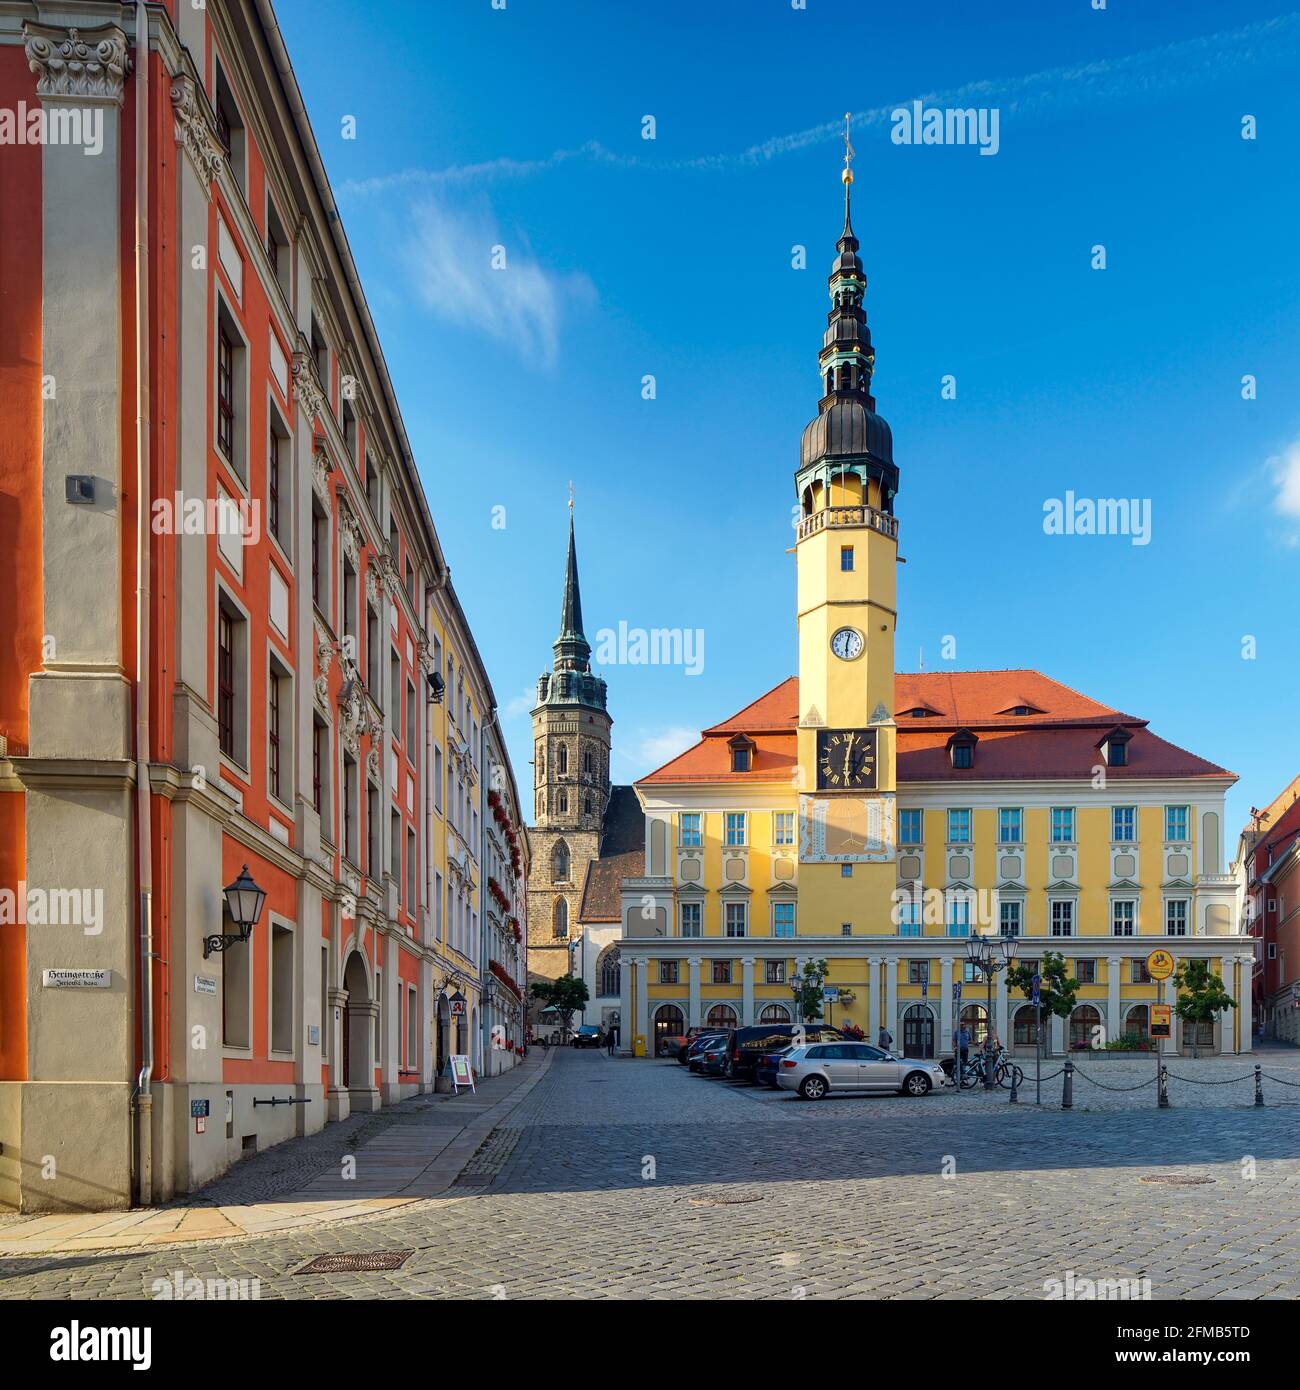 Centro storico con municipio e Petridom sulla piazza del mercato, Bautzen, alta Lusazia, Sassonia, Germania Foto Stock